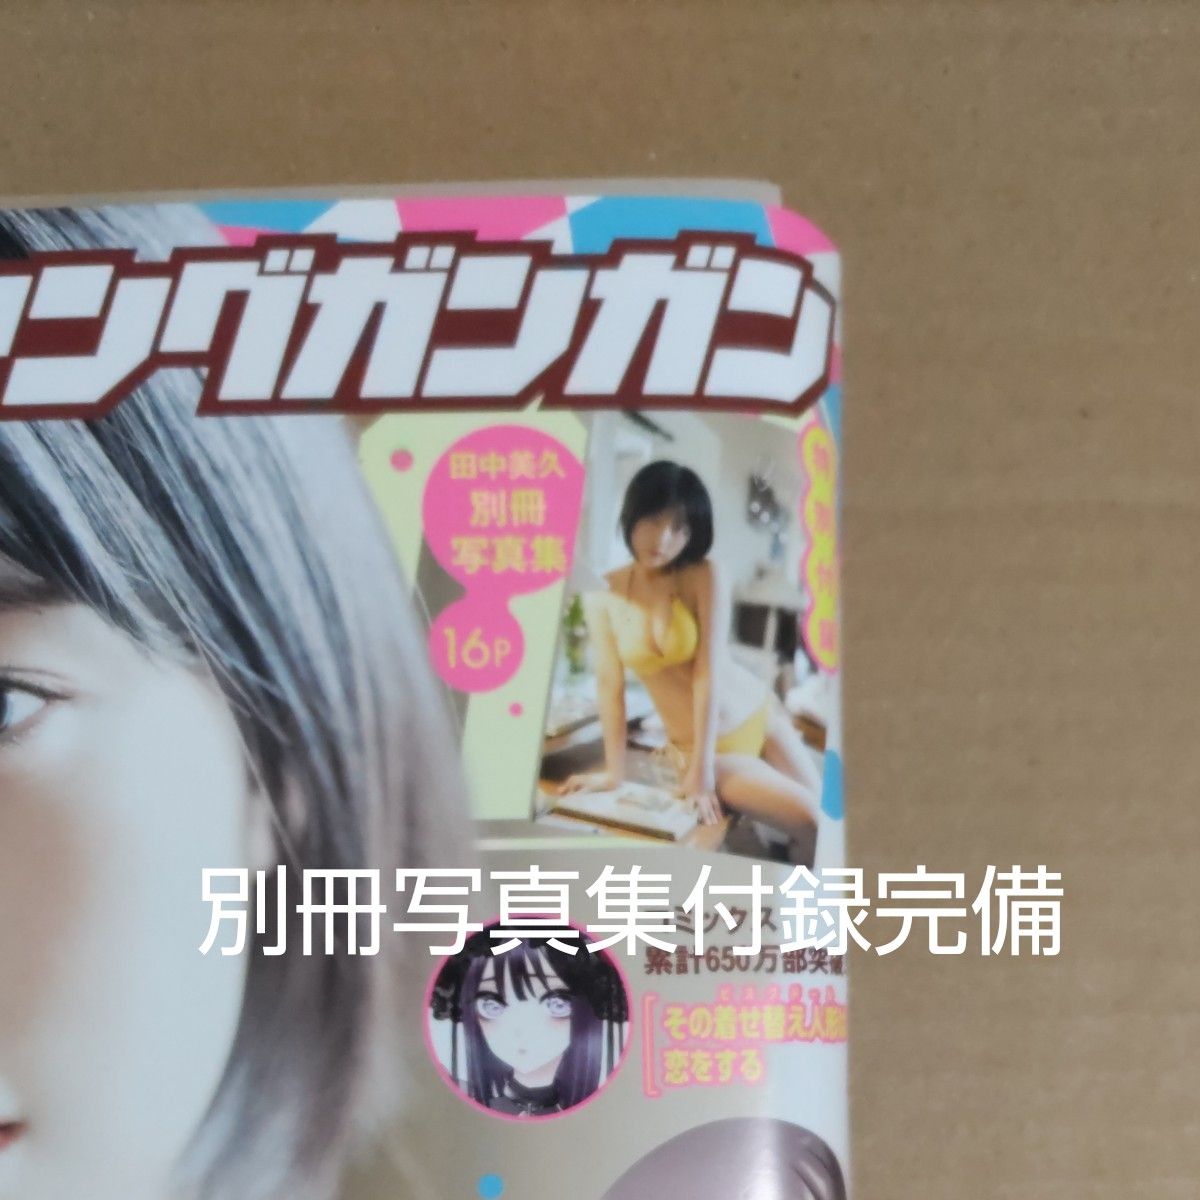 田中美久の雑誌4冊セット/※すべて未読品ですが、応募券、応募ハガキの切り取り有ります